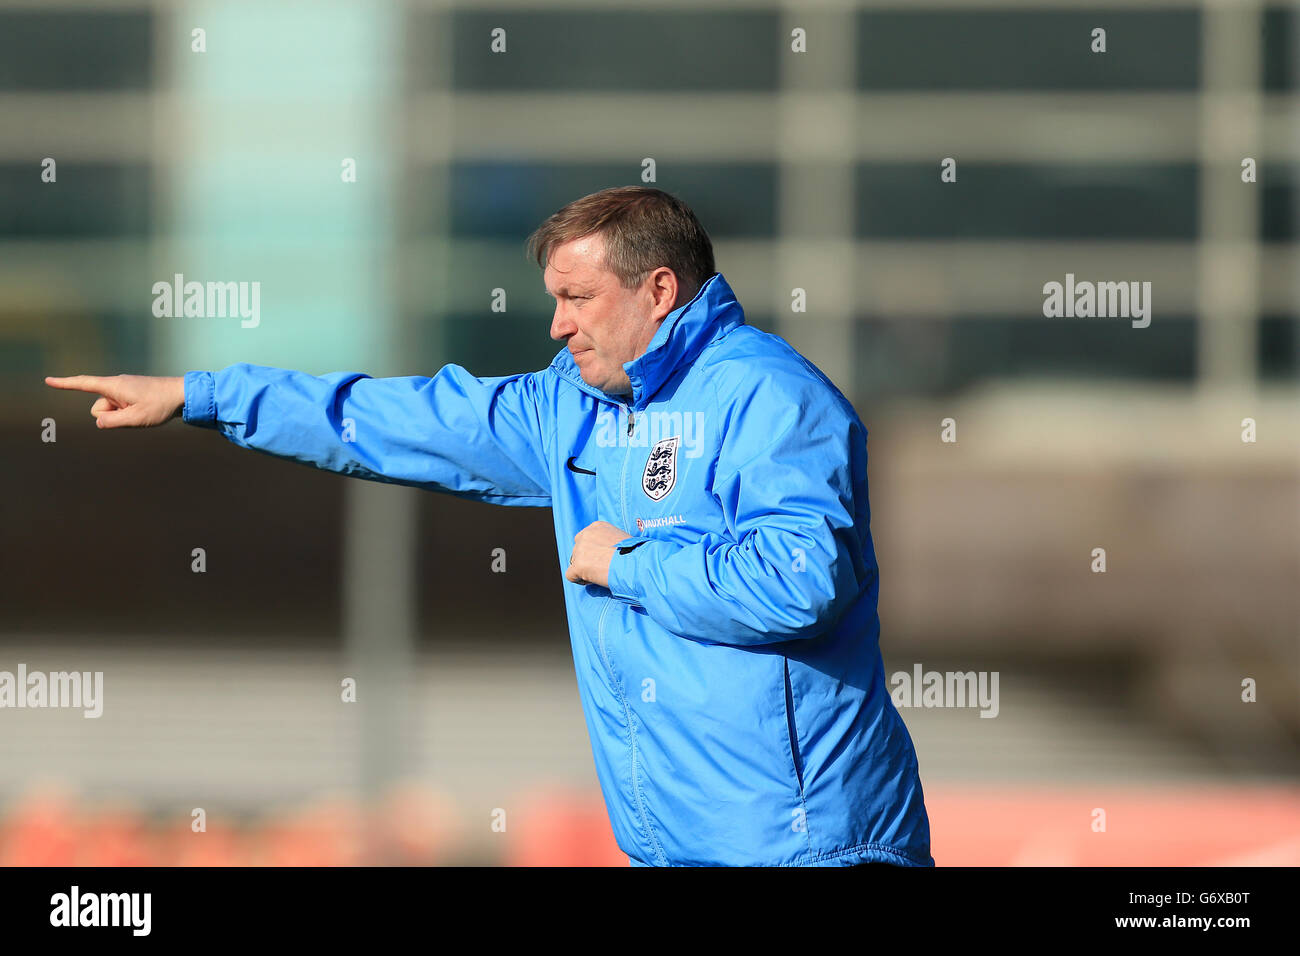 Calcio - under 18 - Inghilterra contro Croazia - St George's Park. Manager Neil Dewsnip, Inghilterra Foto Stock